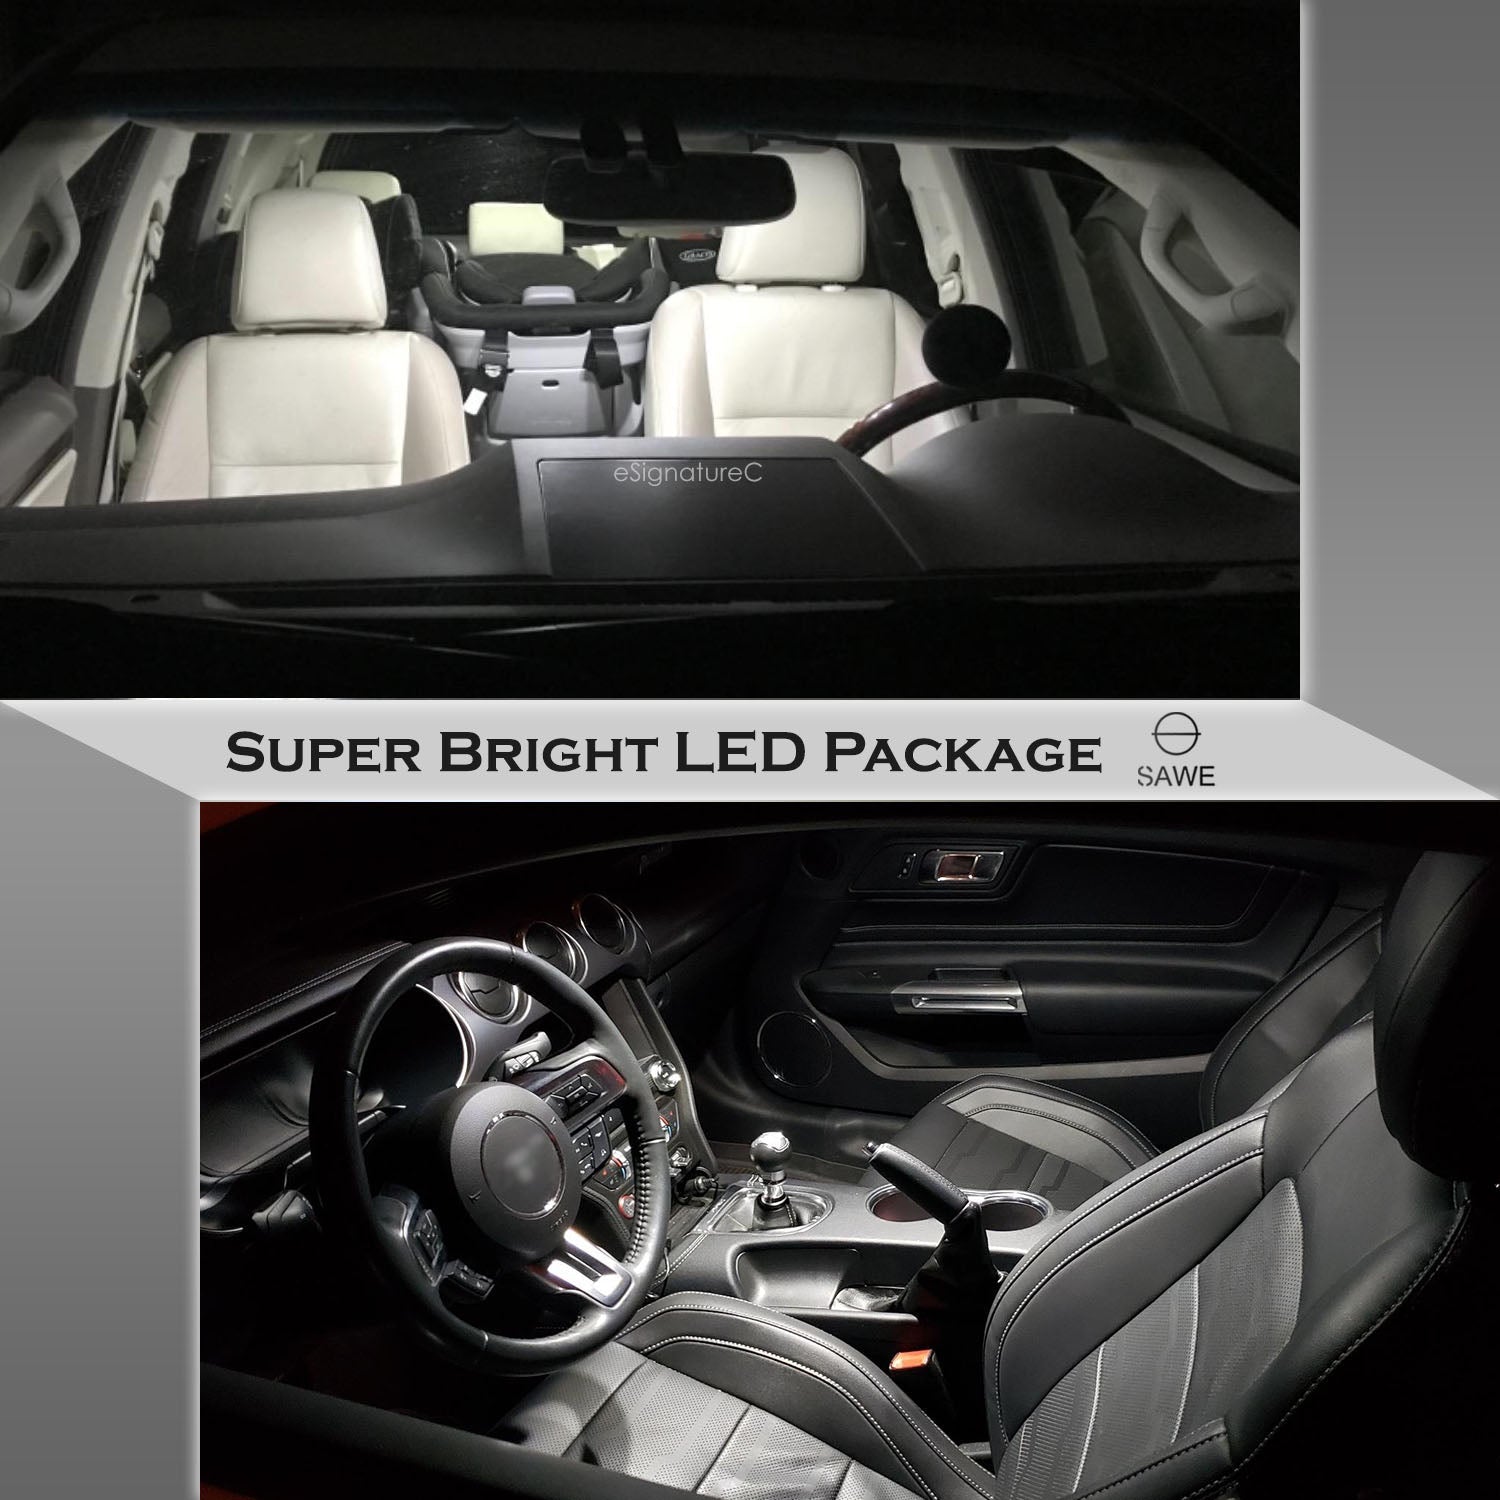 For Nissan Kicks Interior LED Lights - Dome & Map Light Bulbs Package Kit for 2017 - 2023 - White